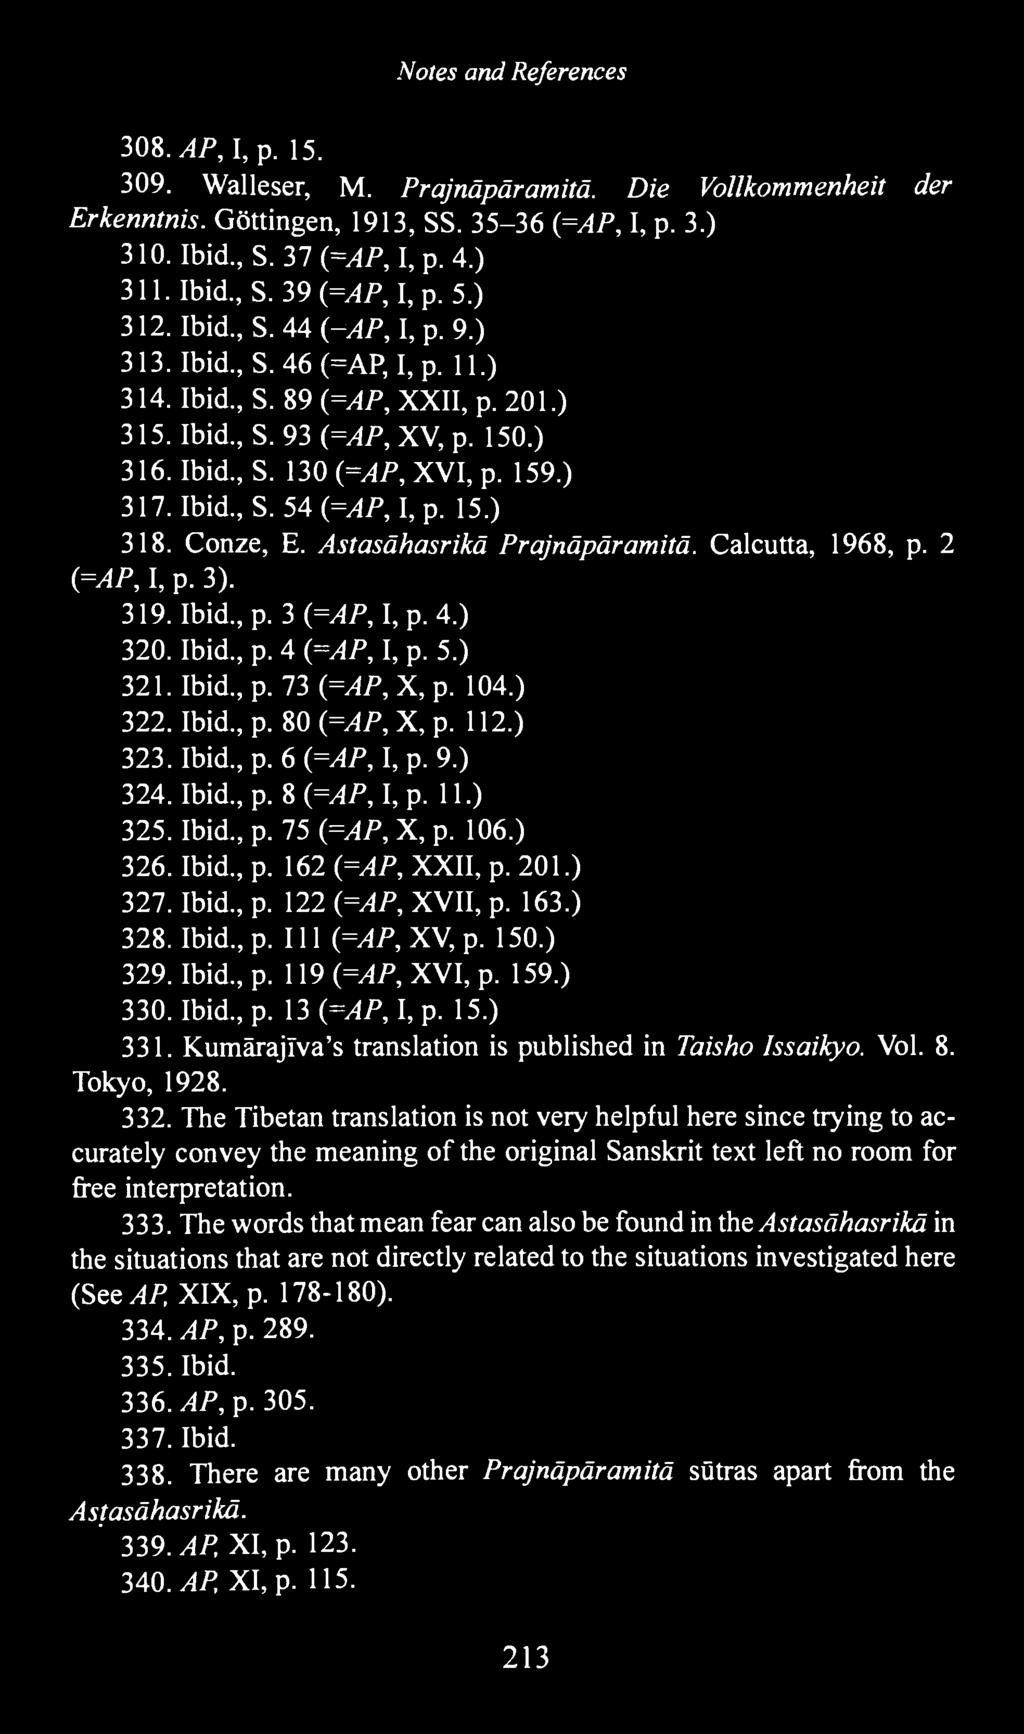 15.) 318. Conze, E. Astasähasrikä Prajnäpäramitä. Calcutta, 1968, p. 2 (=AP, I, p. 3). 319. Ibid, p. 3 (=AP, I, p. 4.) 320. Ibid, p. 4 (=AP, I, p. 5.) 321. Ibid, p. 73 (=AP, X, p. 104.) 322. Ibid, p. 80 (=AP, X, p.